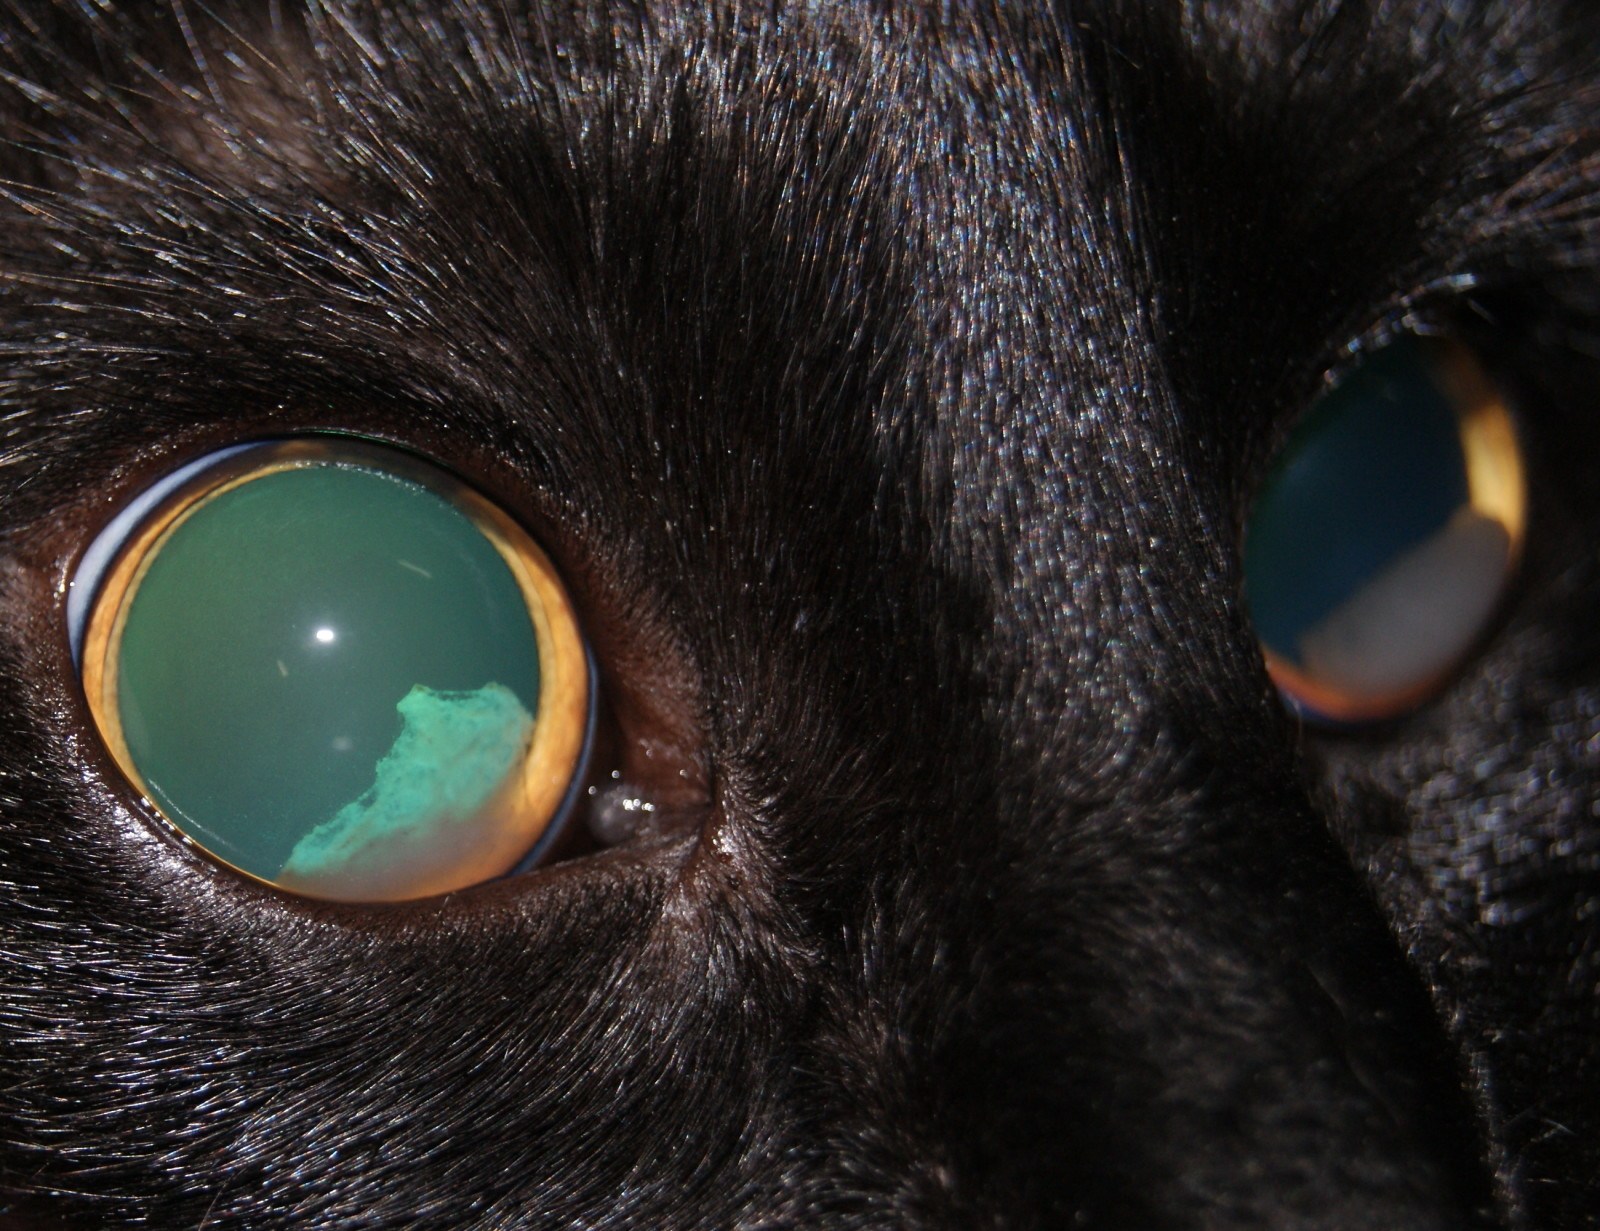 Радужка кошки. Отслоение сетчатки у кота. Отслоение сетчатки глаза у кошки. Отслойка сетчатки глаза у кота. Отслоение сетчатки зрачки.